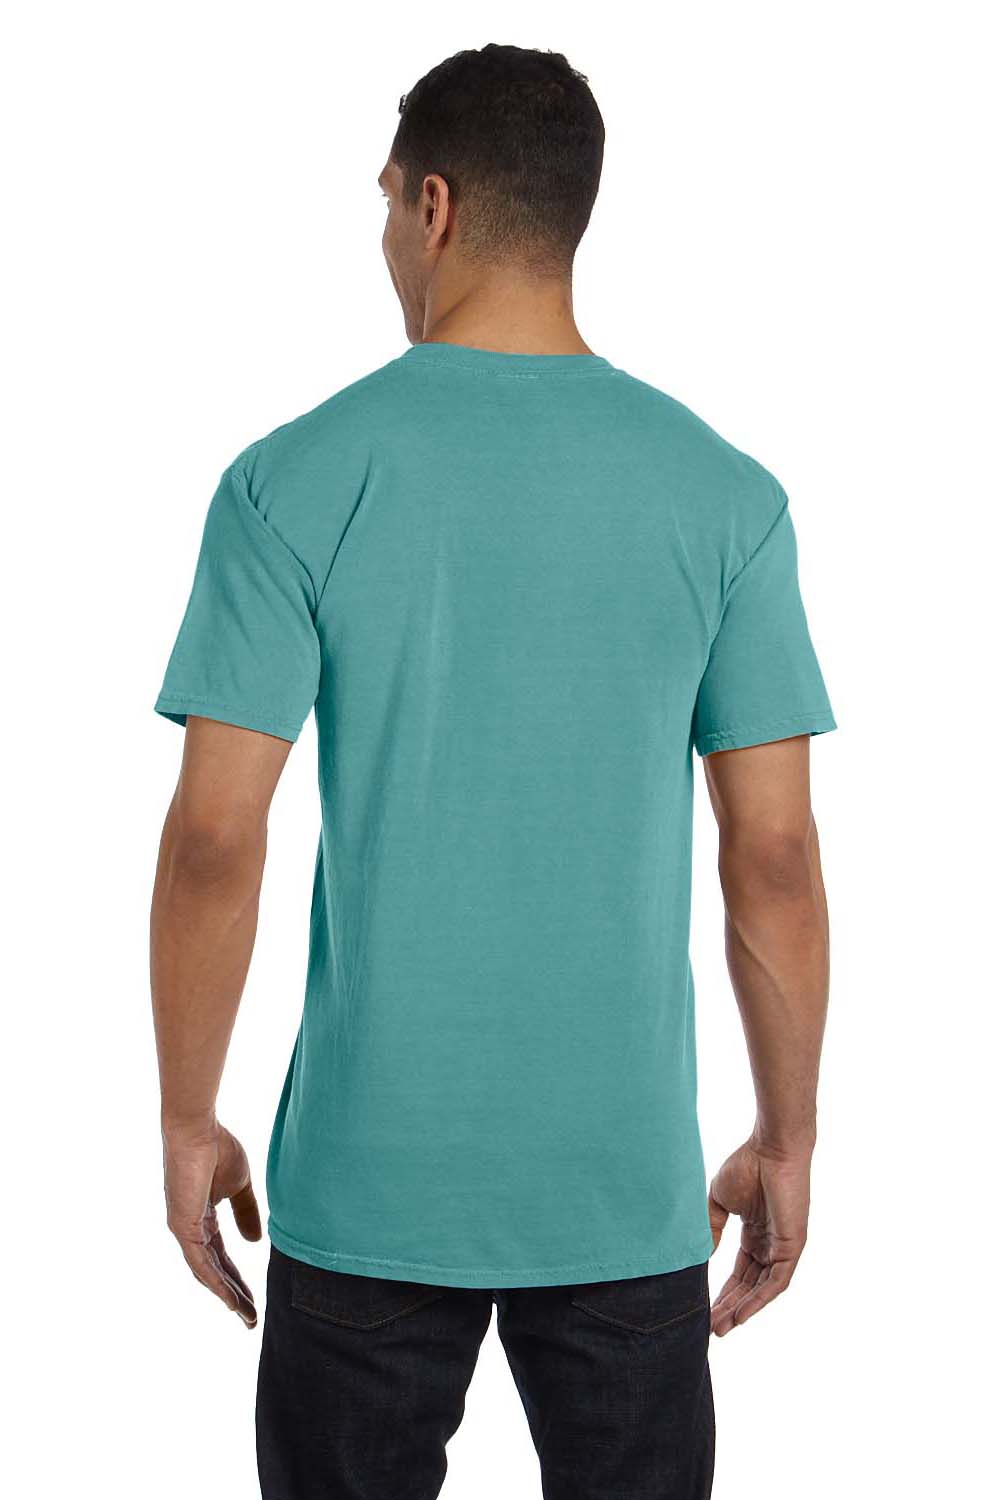 Comfort Colors 6030CC Mens Short Sleeve Crewneck T-Shirt w/ Pocket Seafoam Green Back